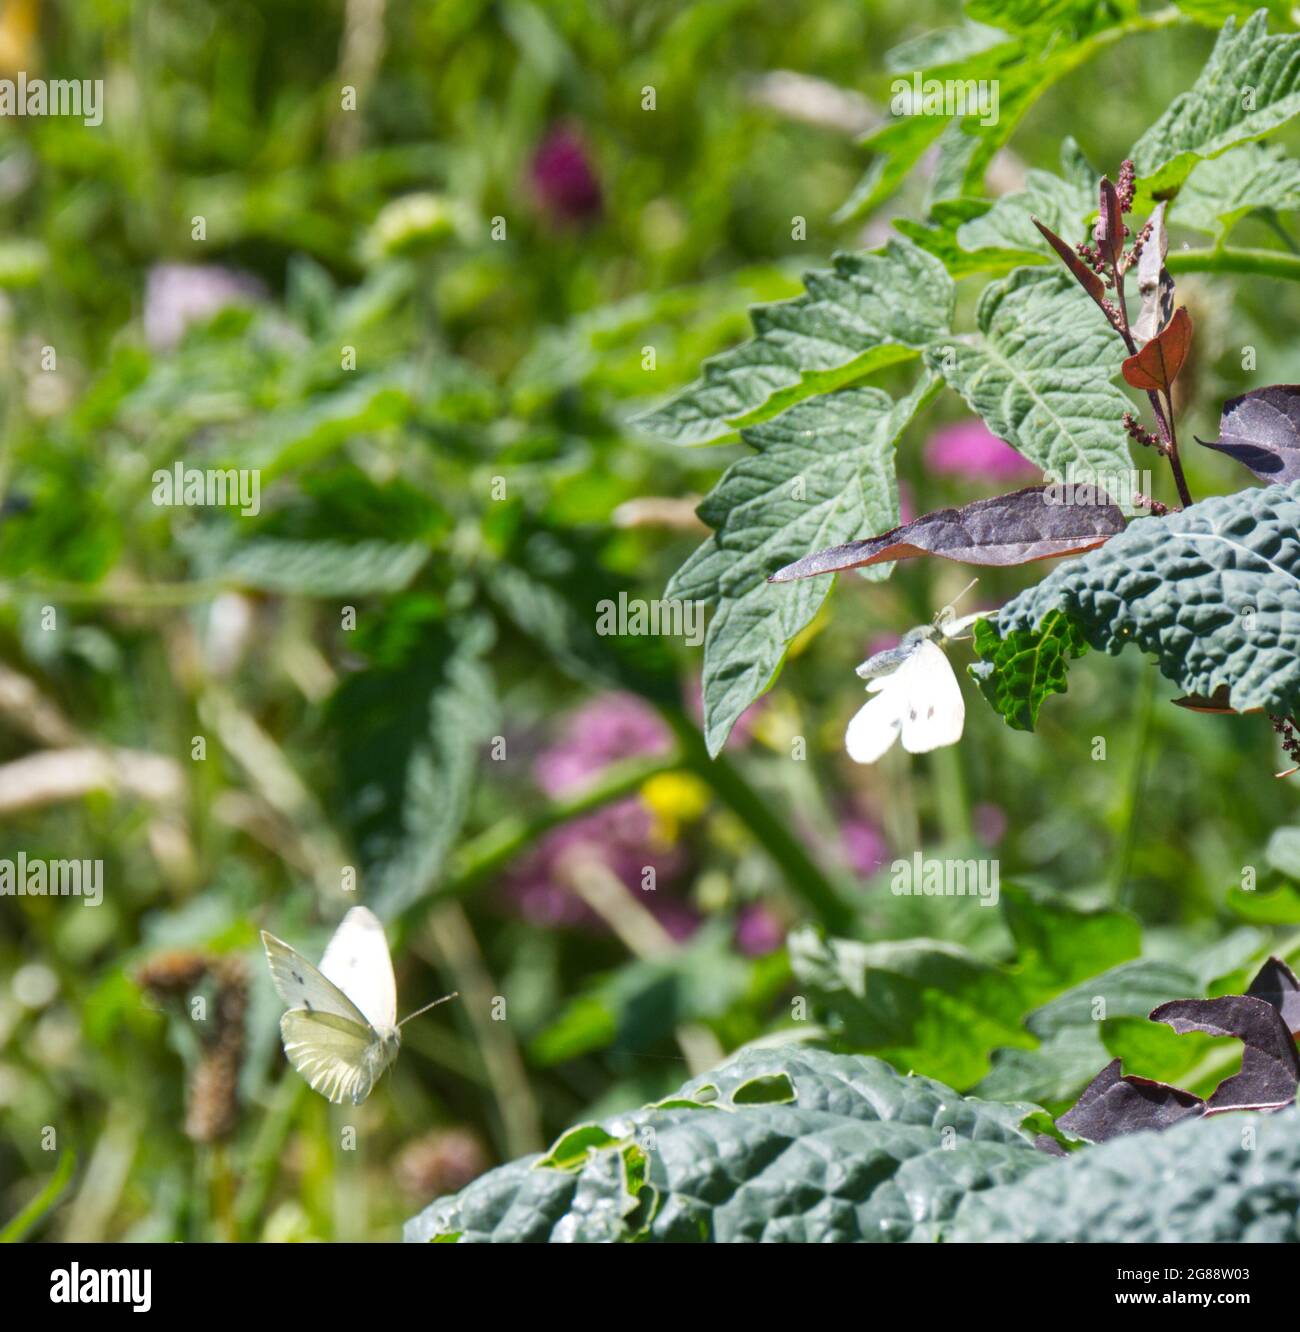 Kohlweißer Schmetterling ( Pieris rapae ) auf Grünkohl (Cavolo nero) und Tomatenpflanze, mit roter Orach im Vereinigten Königreich Stockfoto